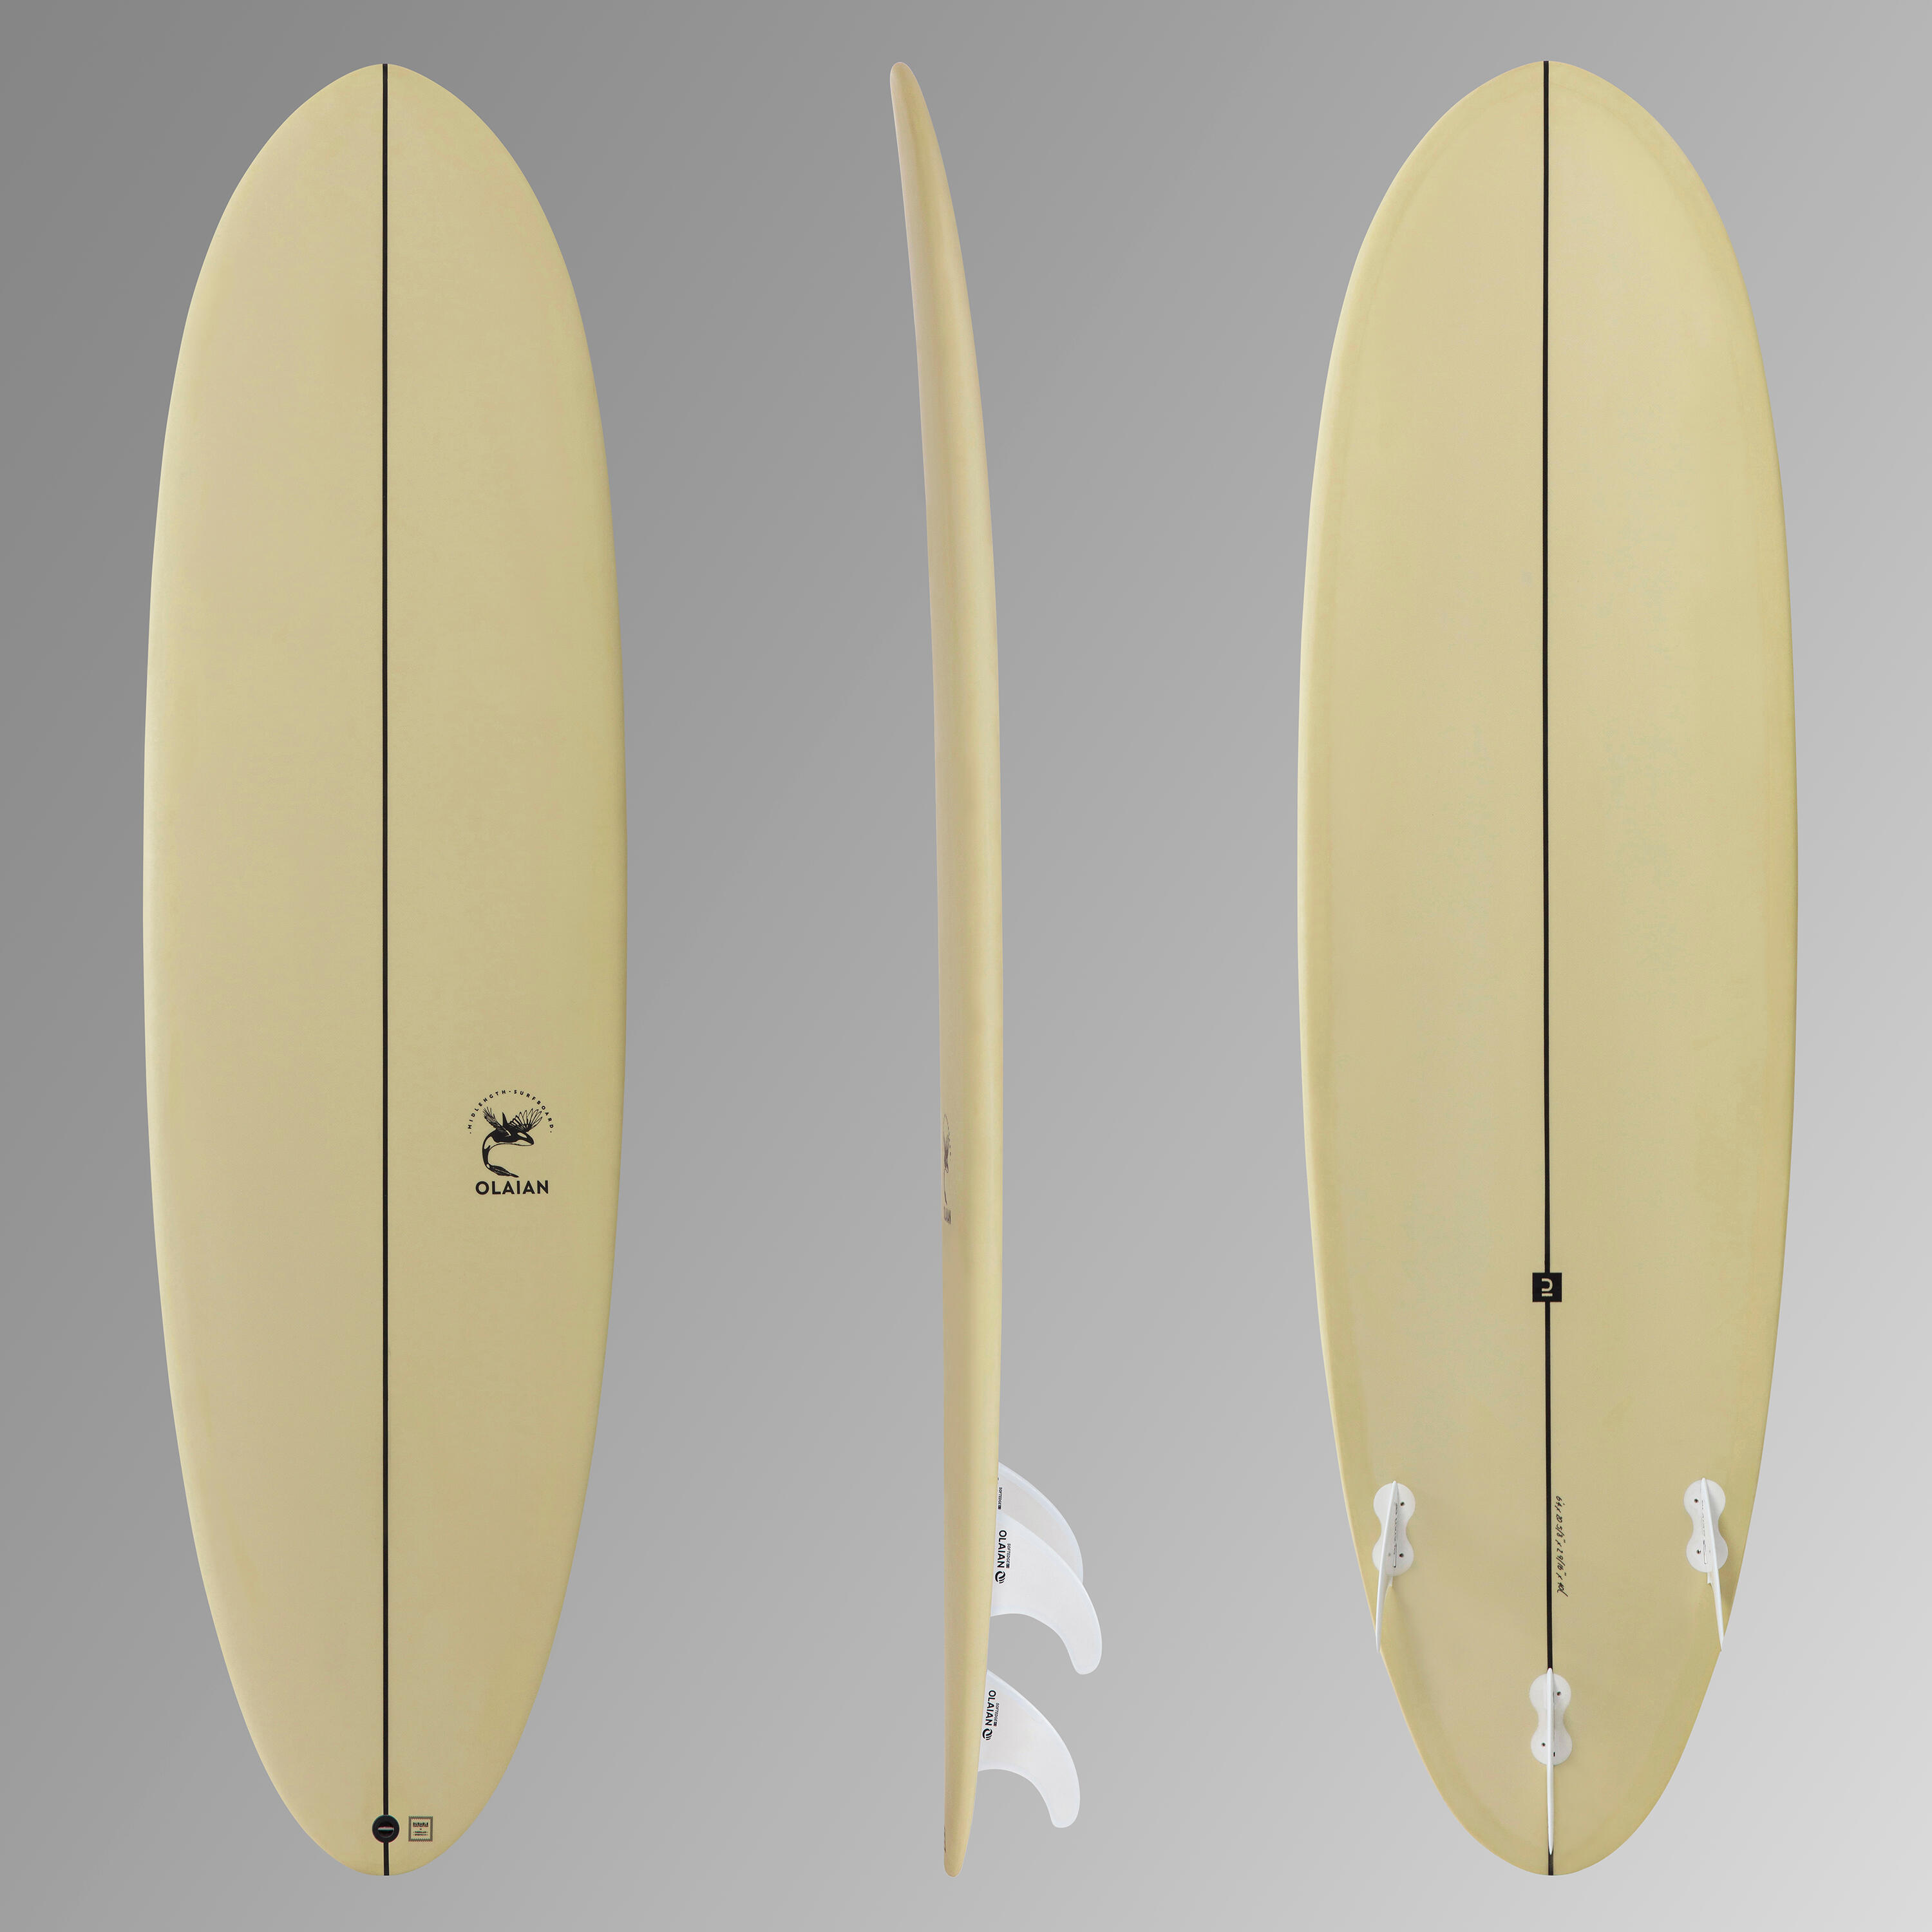 Placă spumă surf 500 6’4” înotătoare incluse decathlon.ro